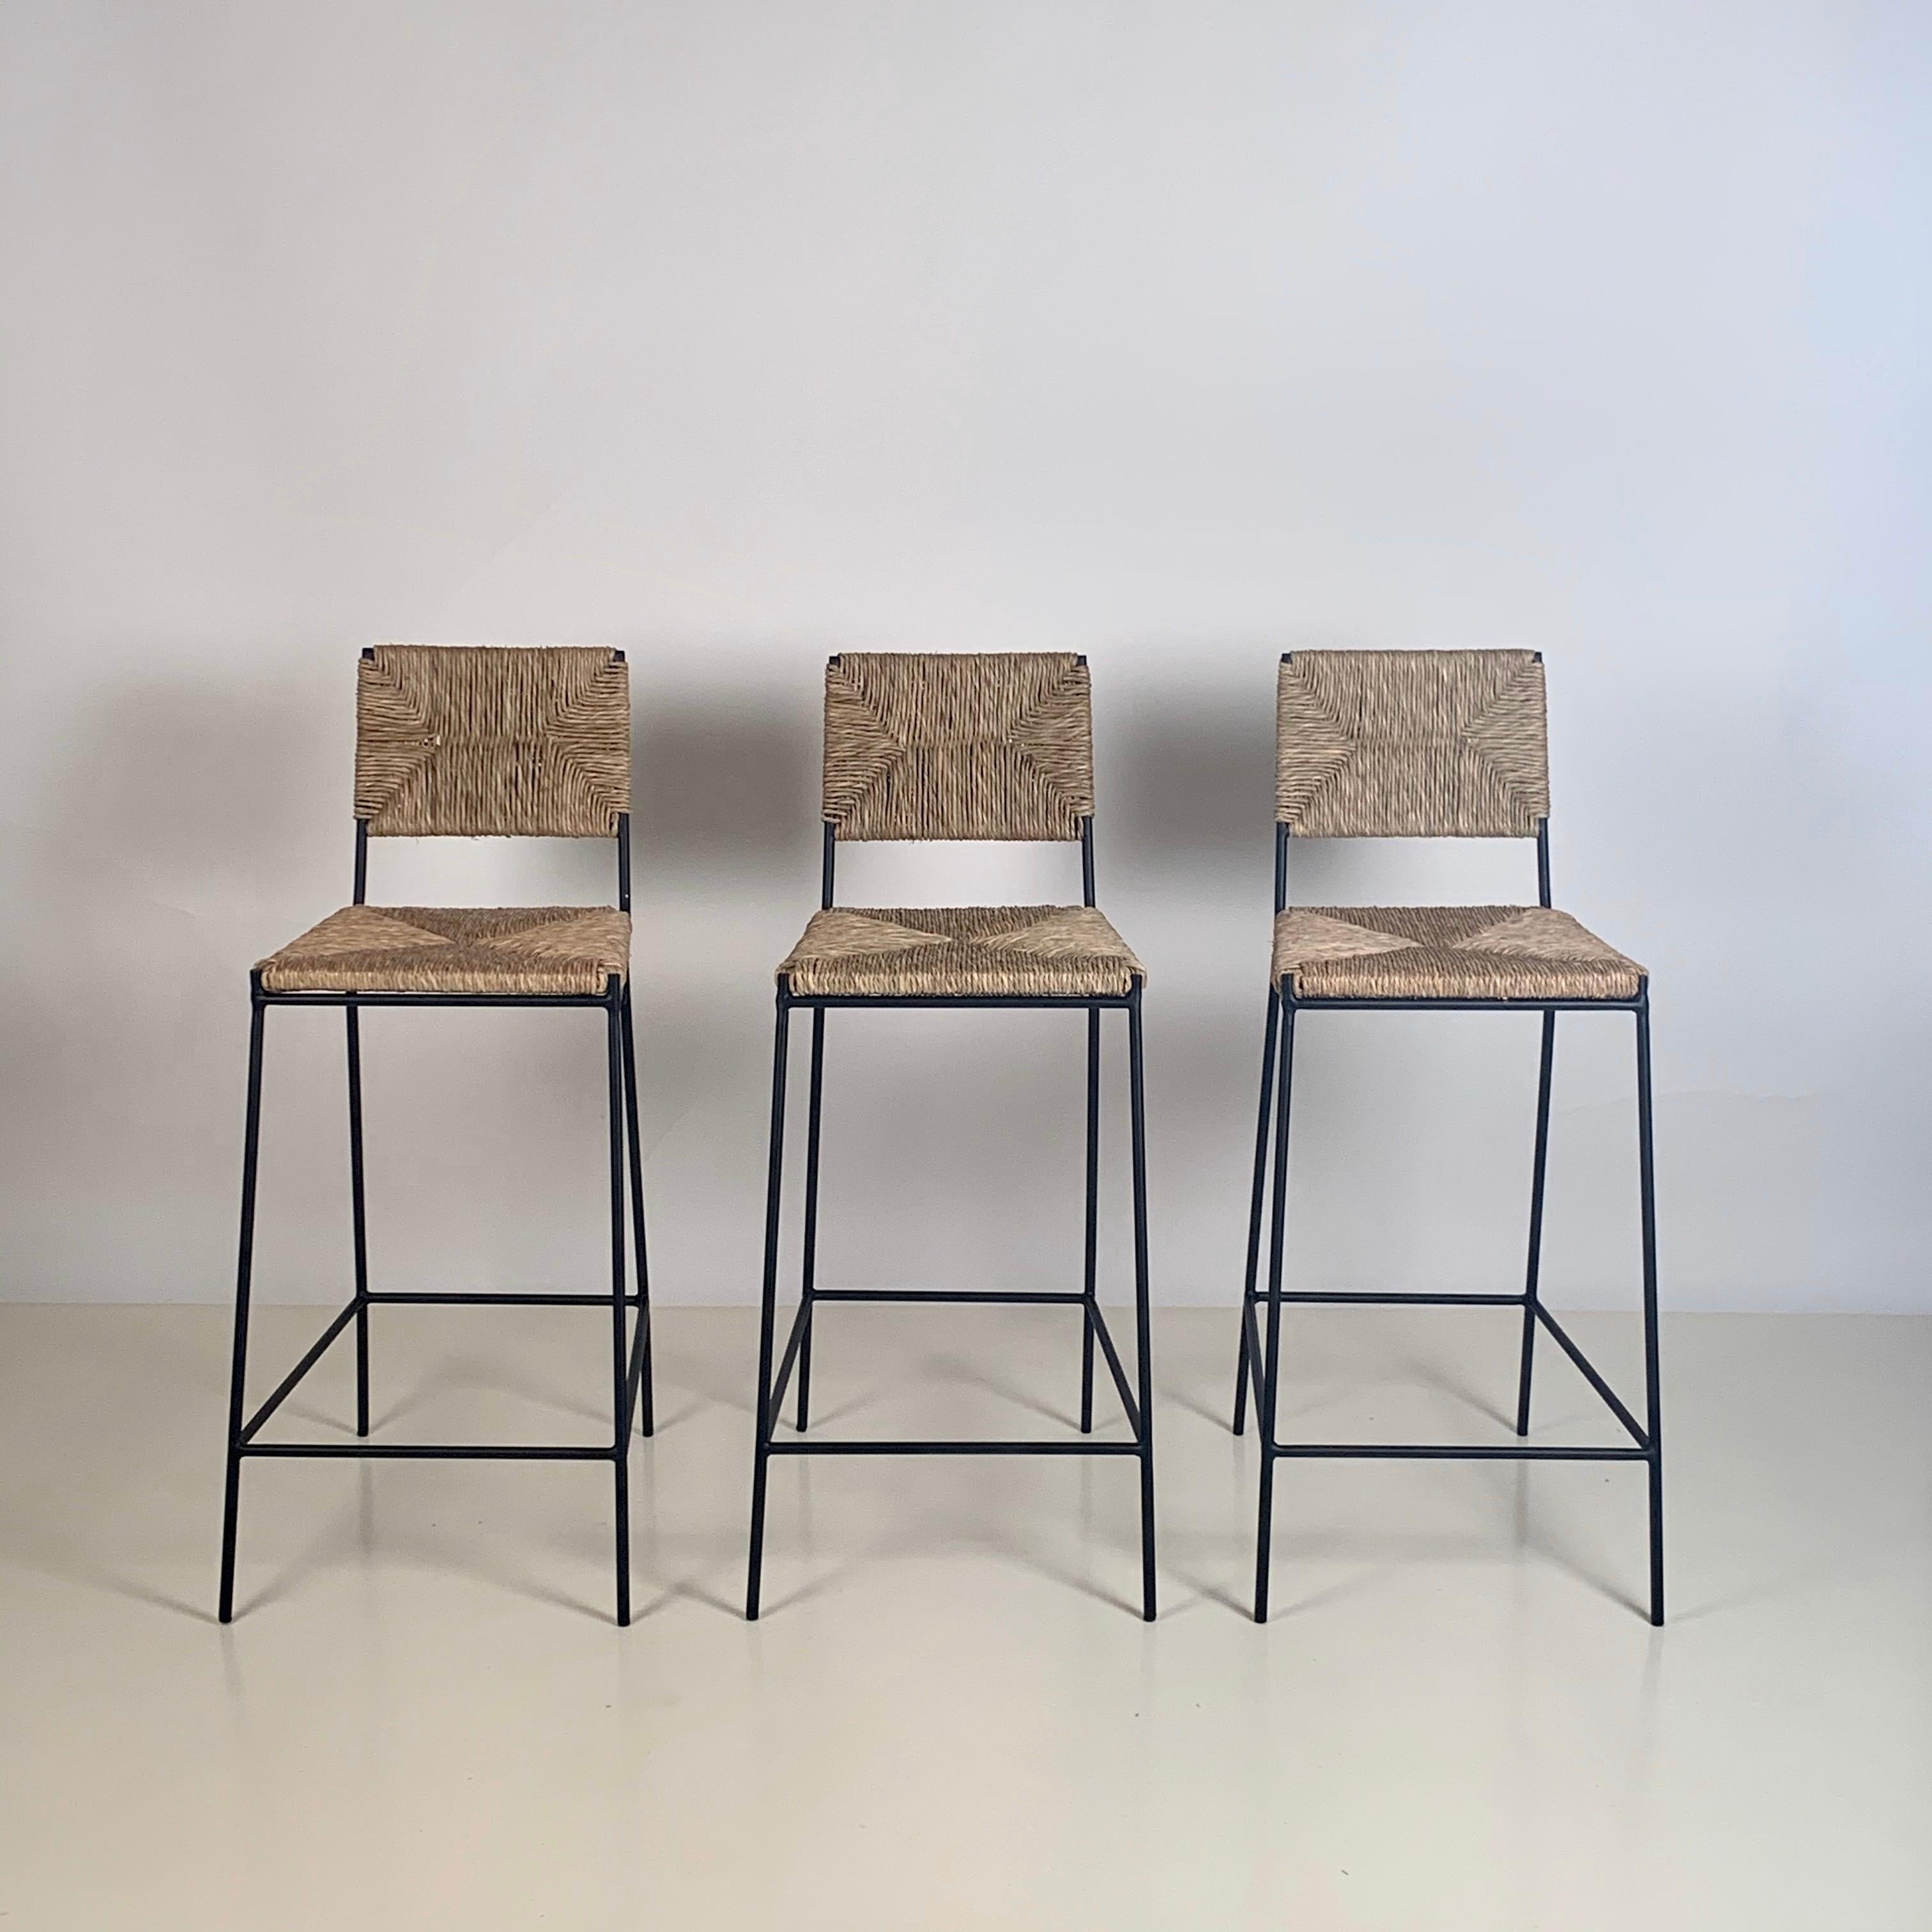 3er Set 'Campagne' Hocker von Design Frères.

Schicke Kombination aus schlanken, aber robusten und stabilen pulverbeschichteten Stahlrahmen mit handgeflochtenen Binsen-Sitzflächen und -Rückenlehnen. Zusätzliche Stütze unter dem Binsen-Sitz für